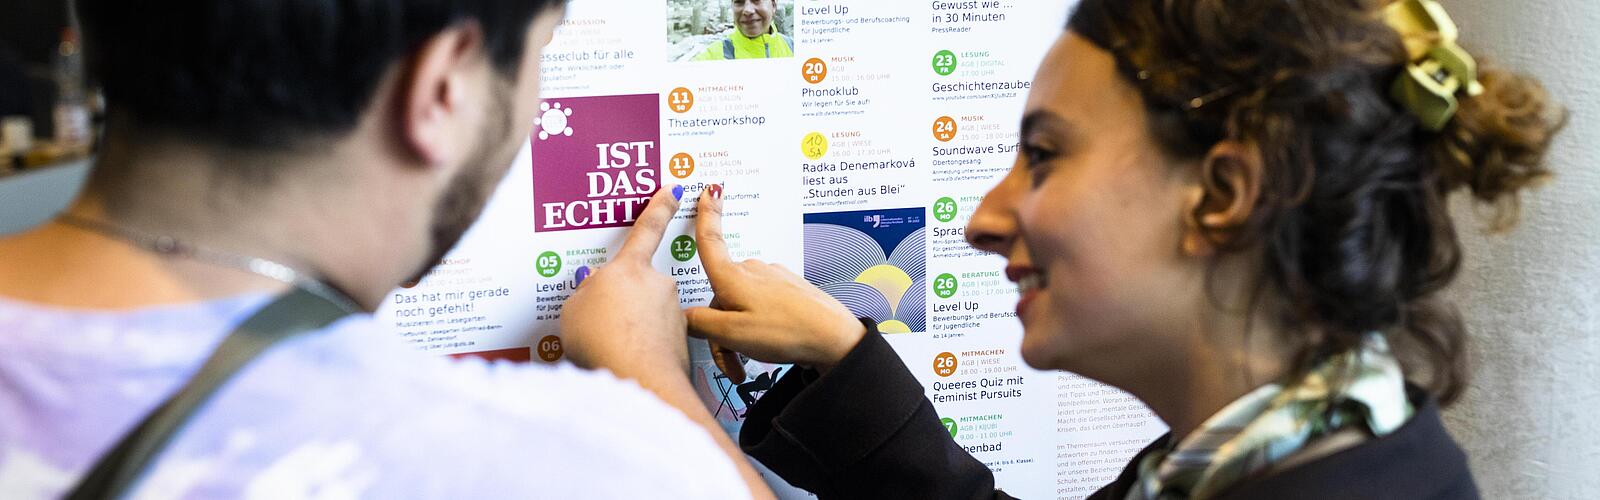 Zwei Menschen zeigen auf einen bunten Veranstaltungskalender mit kostenlosen Veranstaltungen in Berlin